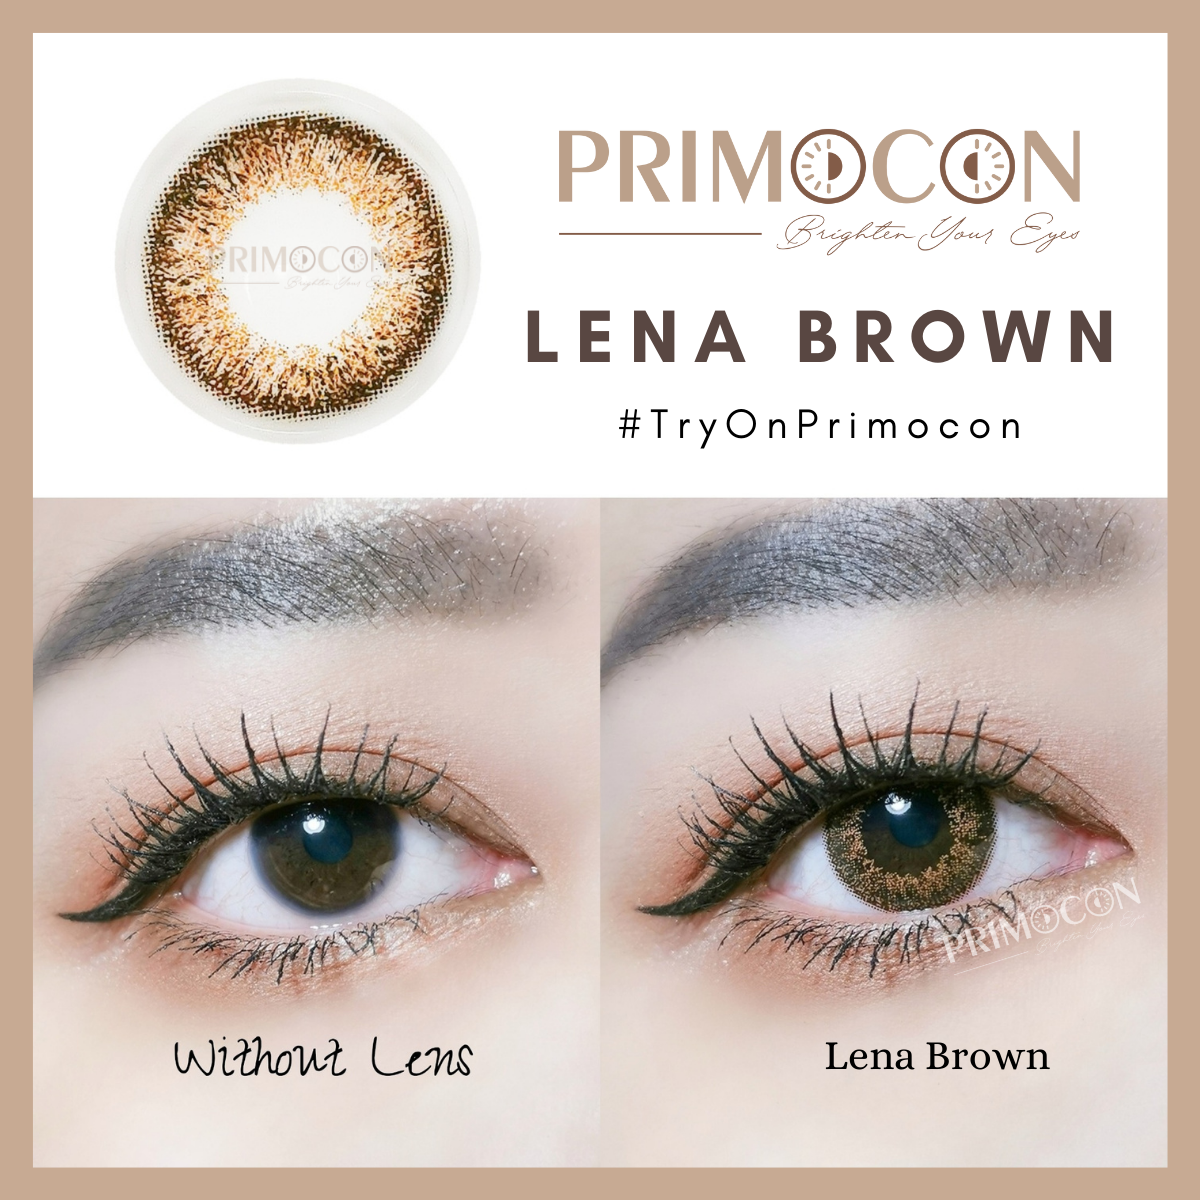 Lena Brown - Primocon